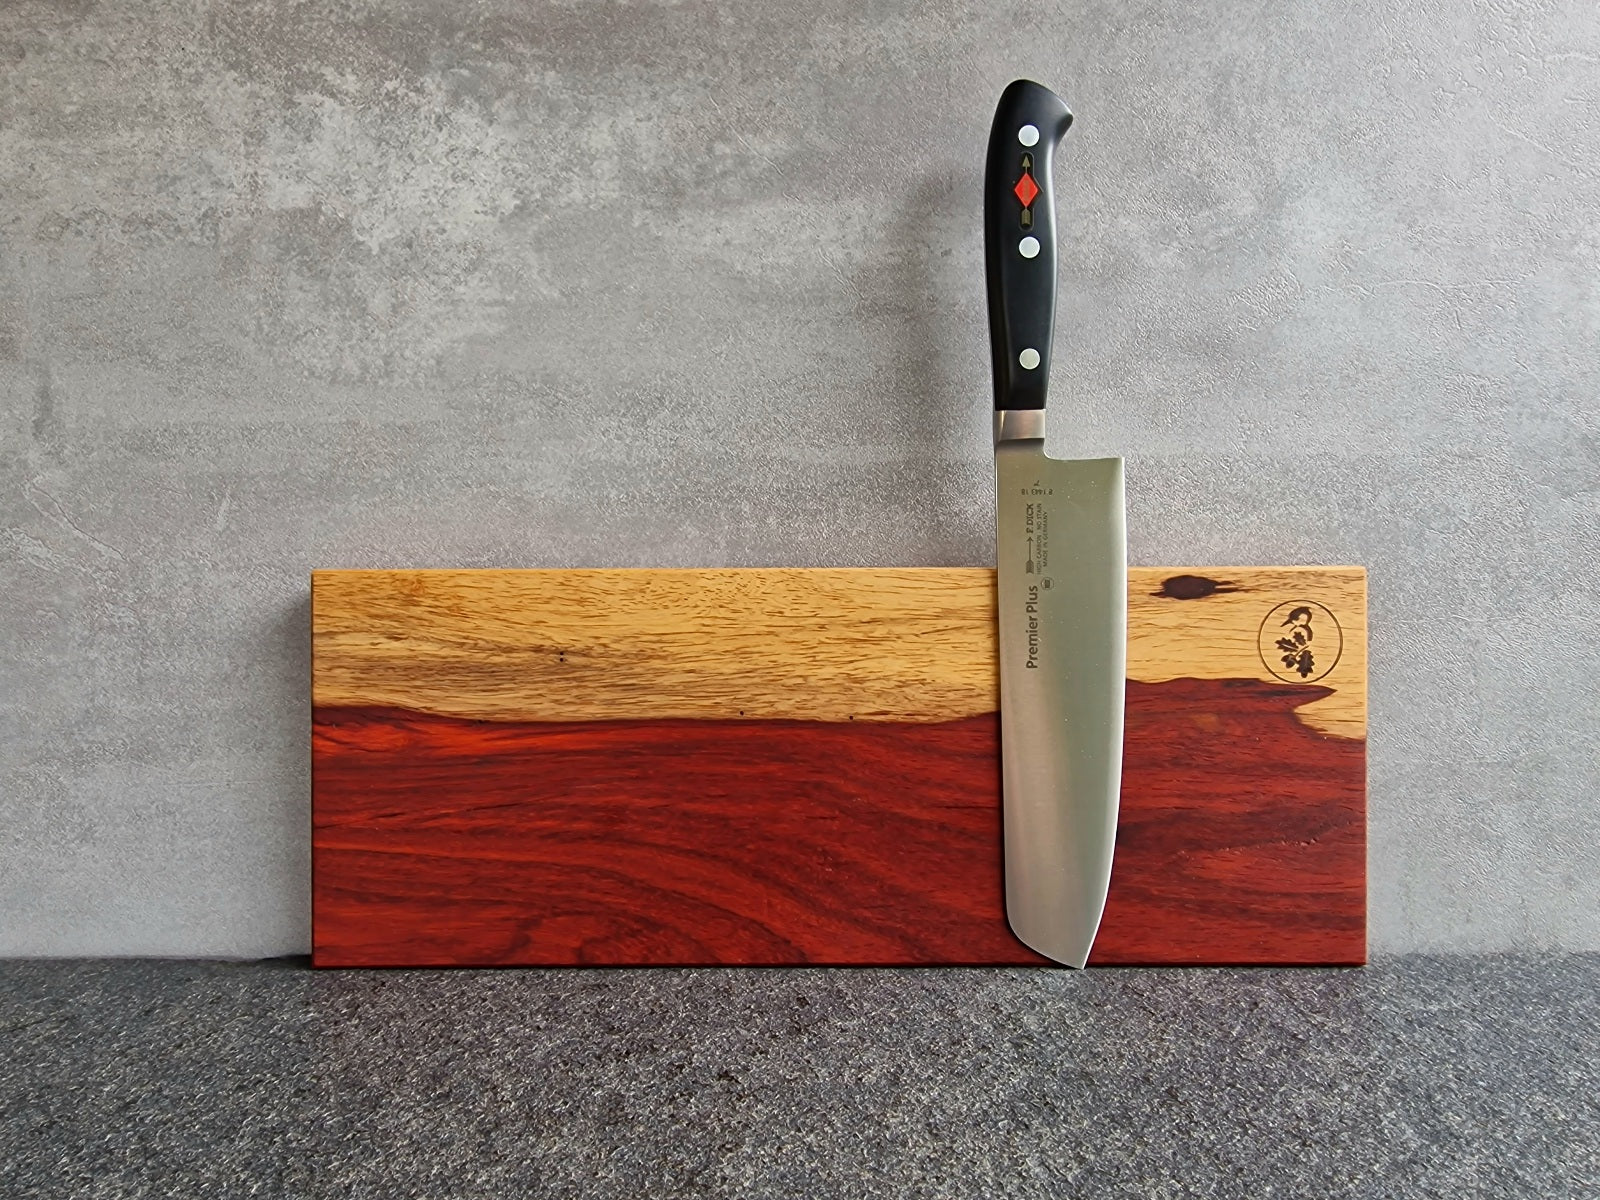 UnikatMagnetische Messerleiste aus rotem Padouk mit hellem Splint durchzogen. Montiert an einer Betonwand mit einem Dick Usuba Gemüsemesser.